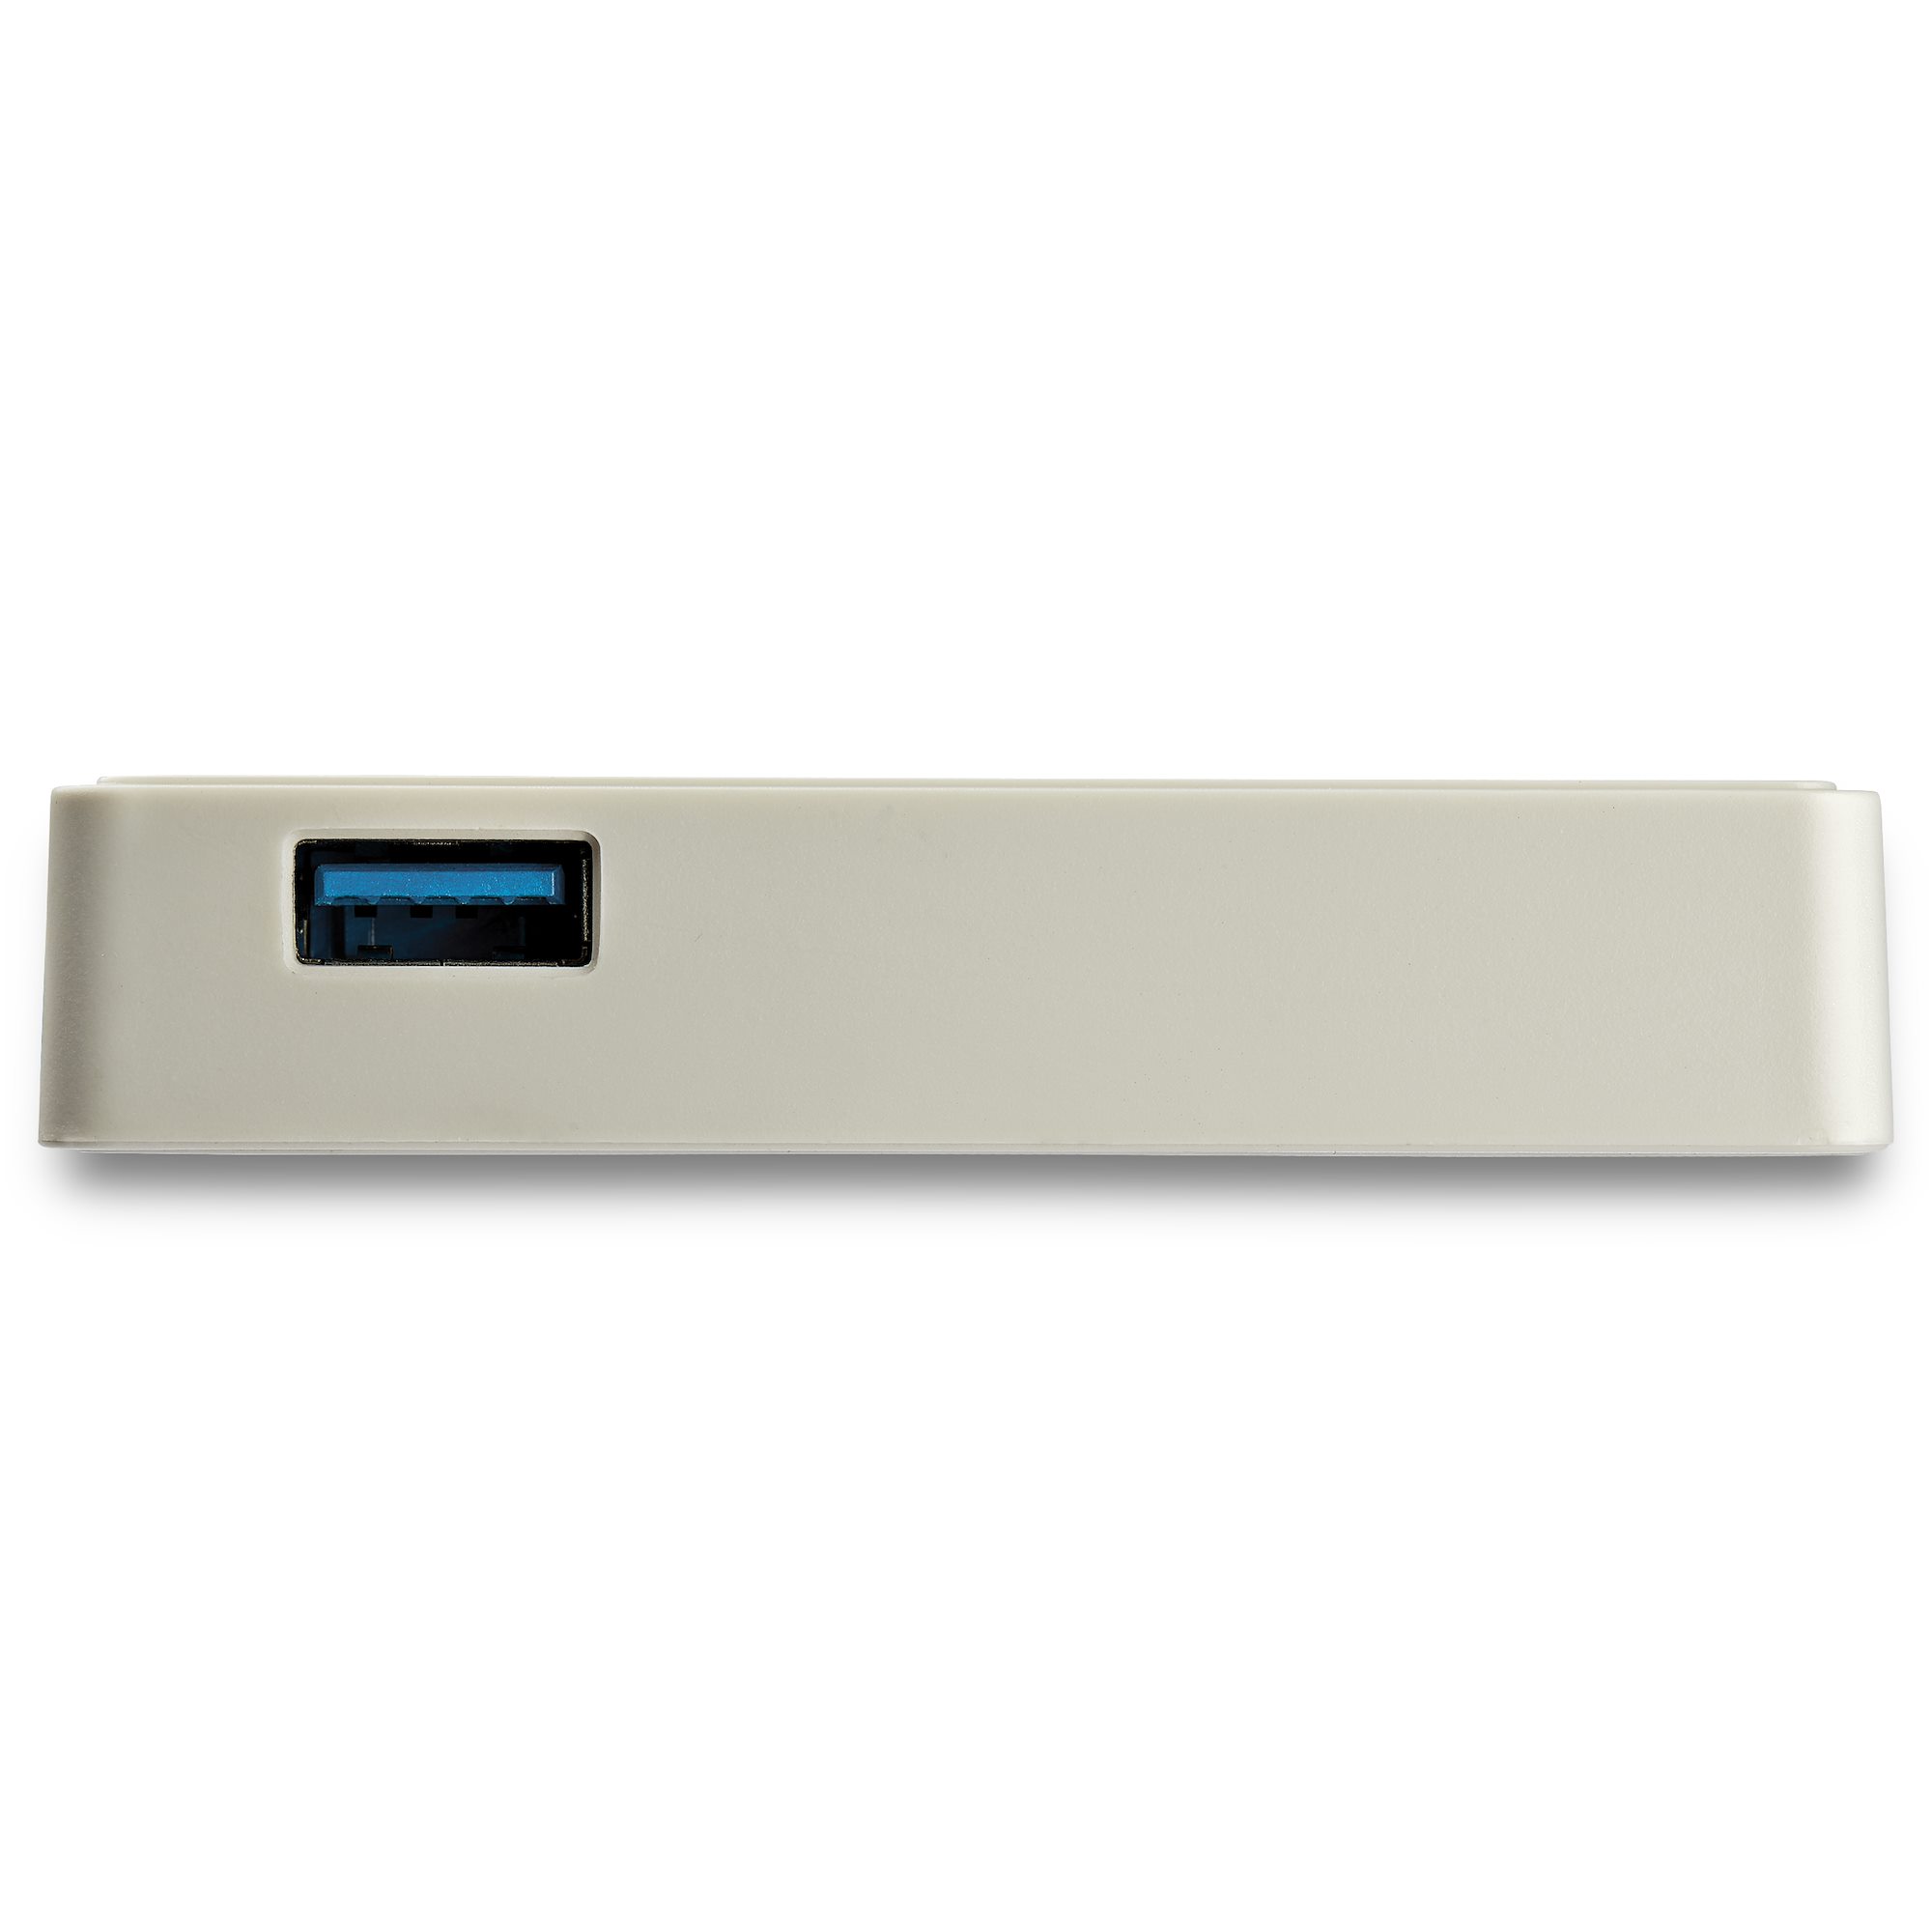 Adaptateur USB-C vers Gigabit Ethernet avec port USB-A - Adaptateur Réseau  Blanc 1Gbps NIC USB 3.0/3.1 Type C - 1GbE USB-C RJ45/LAN TB3 Compatible